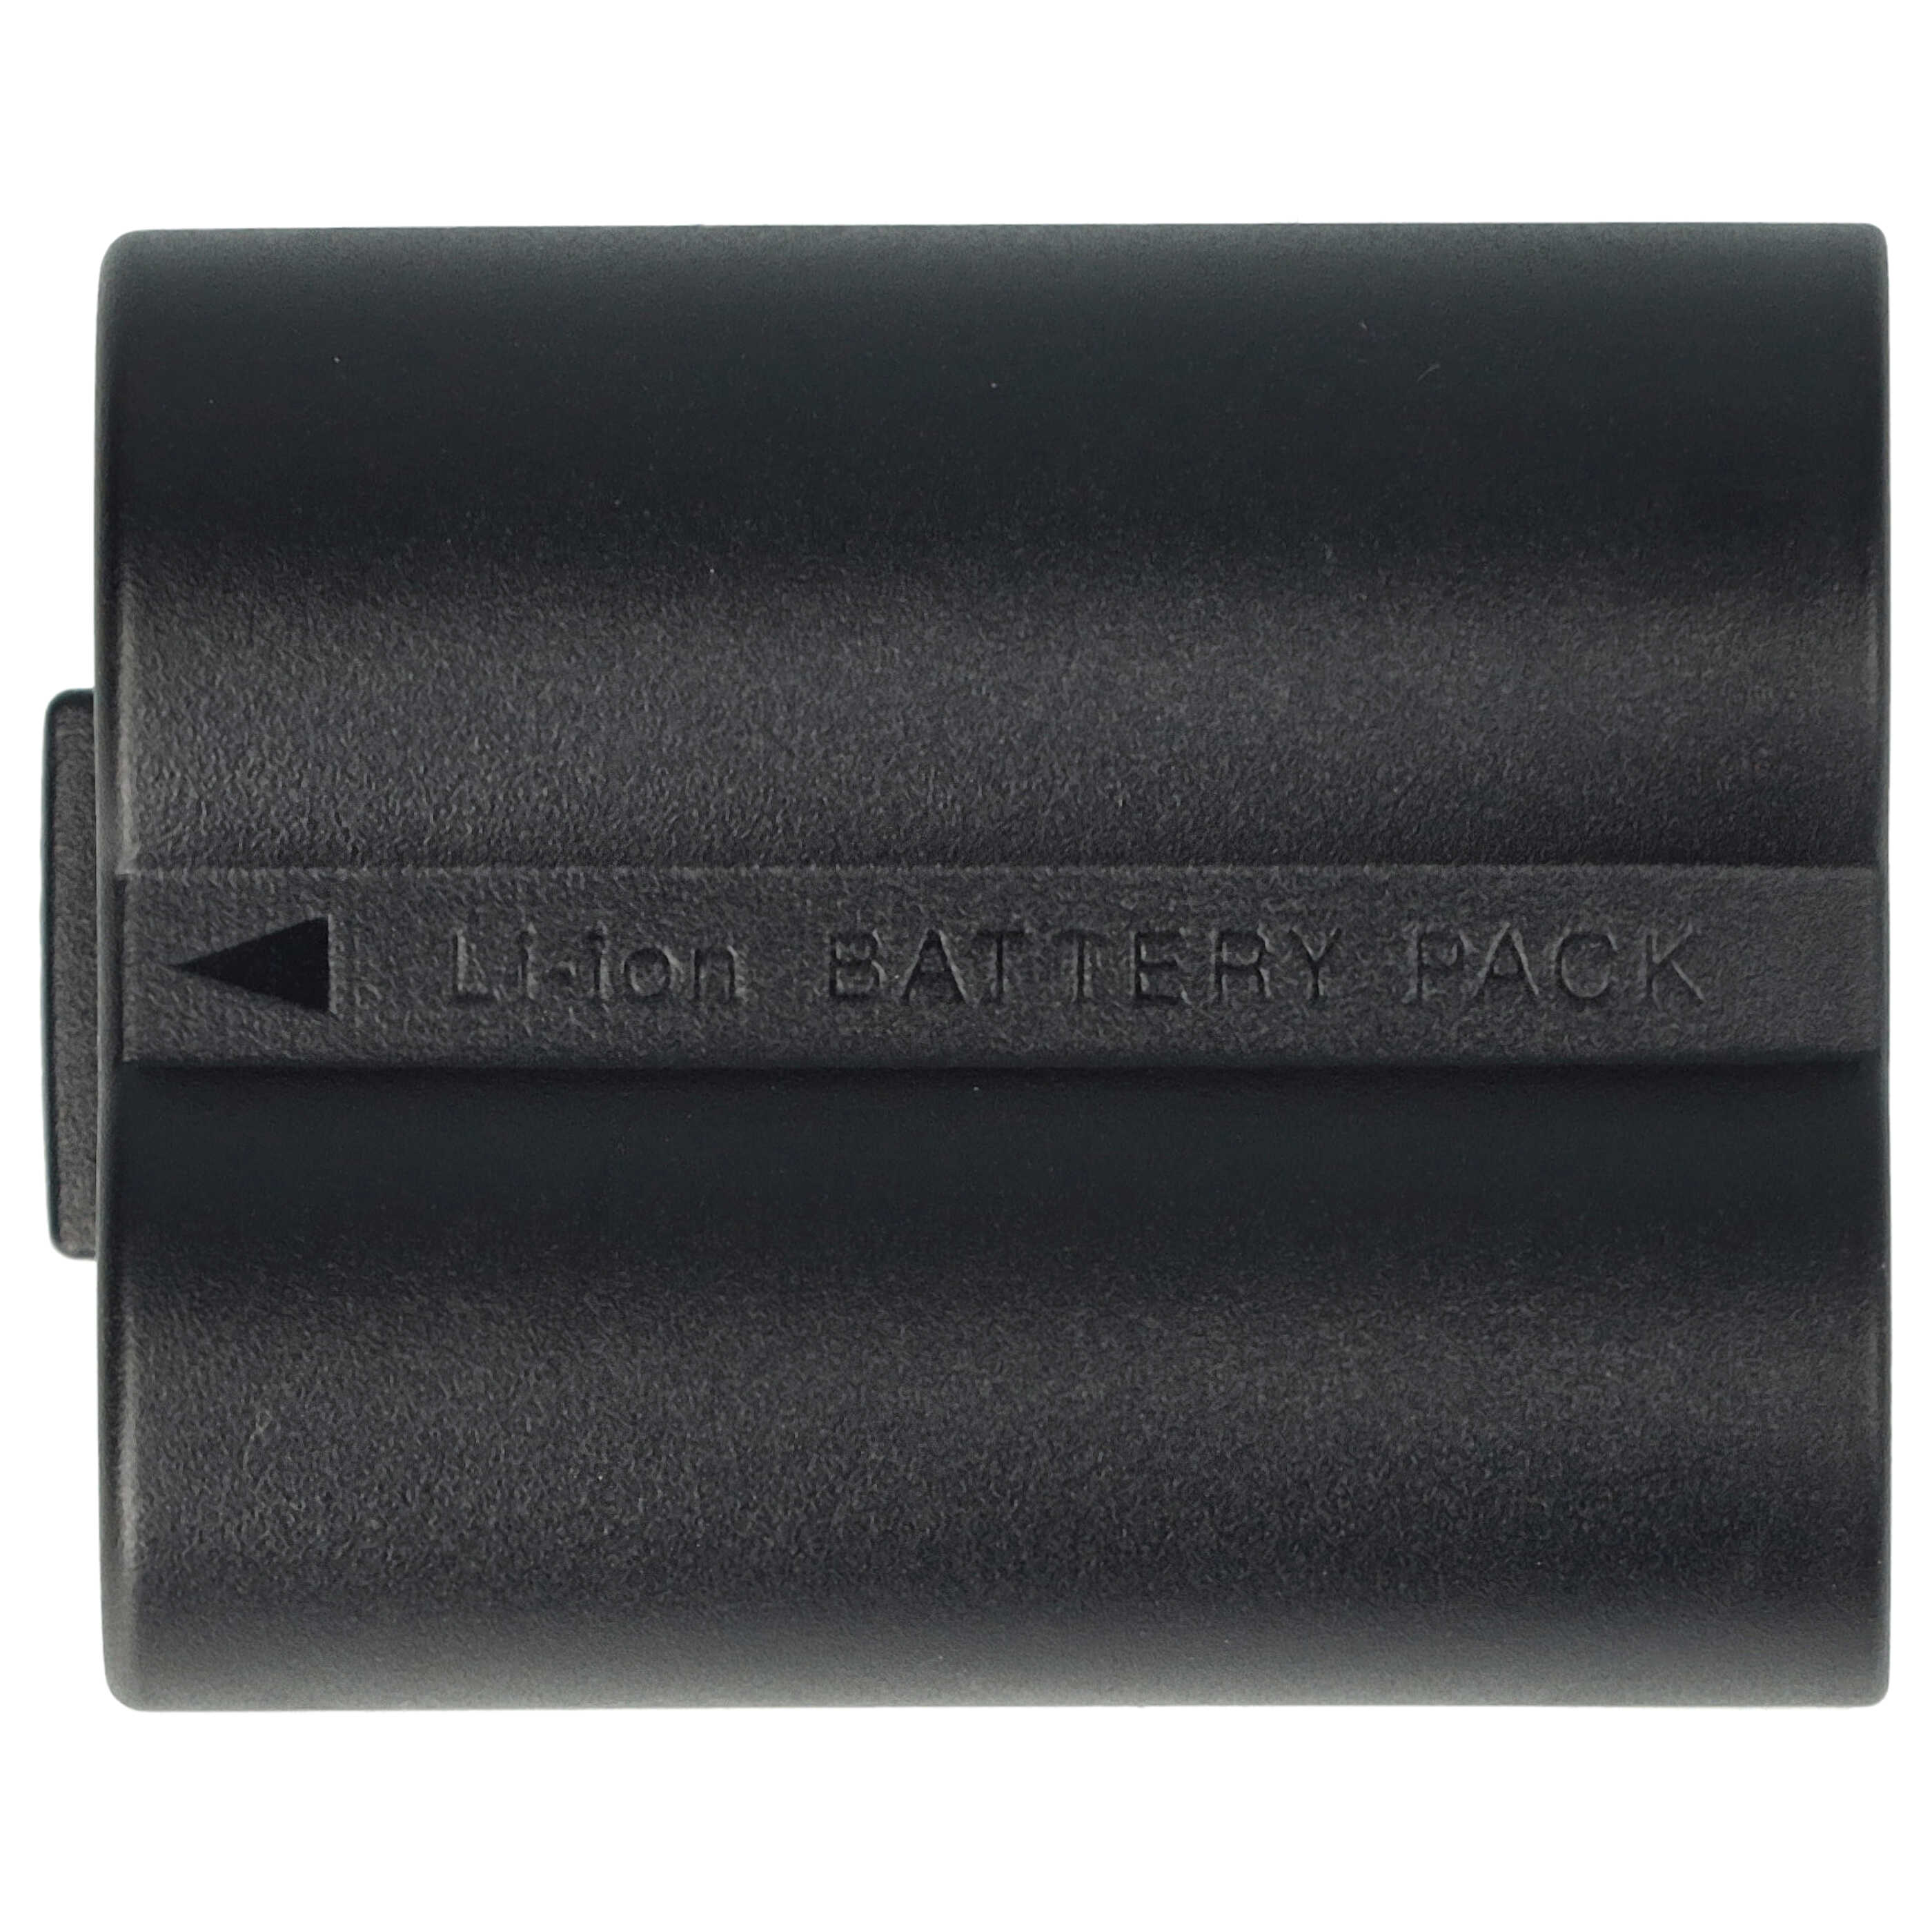 Batterie remplace Leica BP-DC5 pour appareil photo - 600mAh 7,2V Li-ion